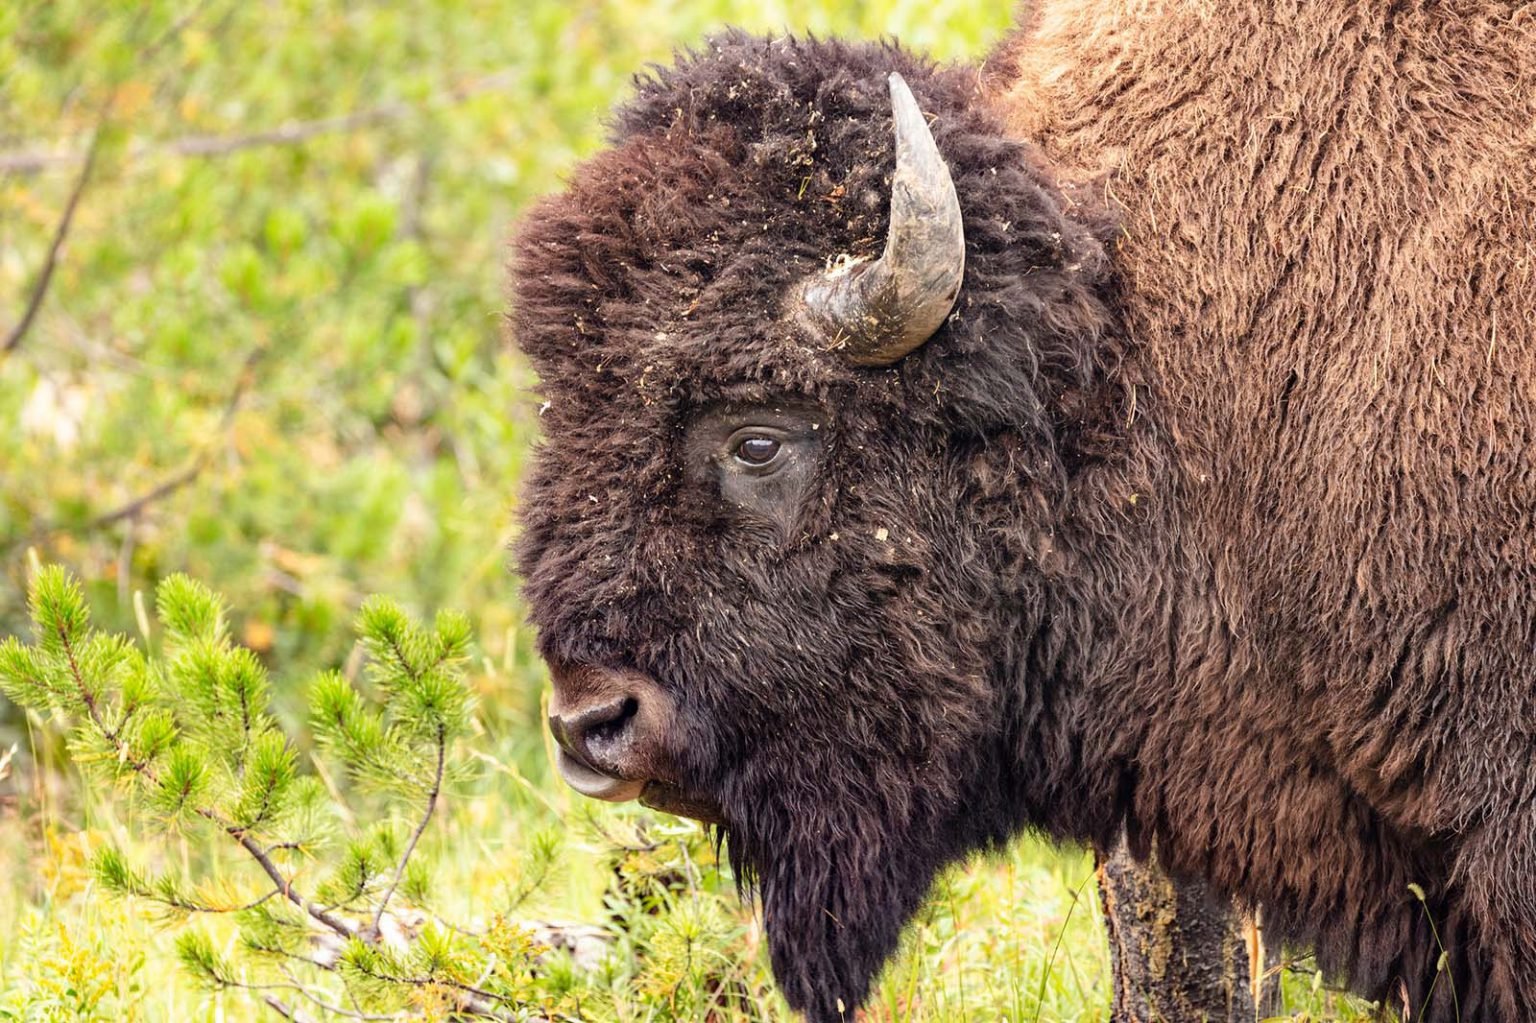 Bison portrait. Jacob W. Frank / NPS photo.